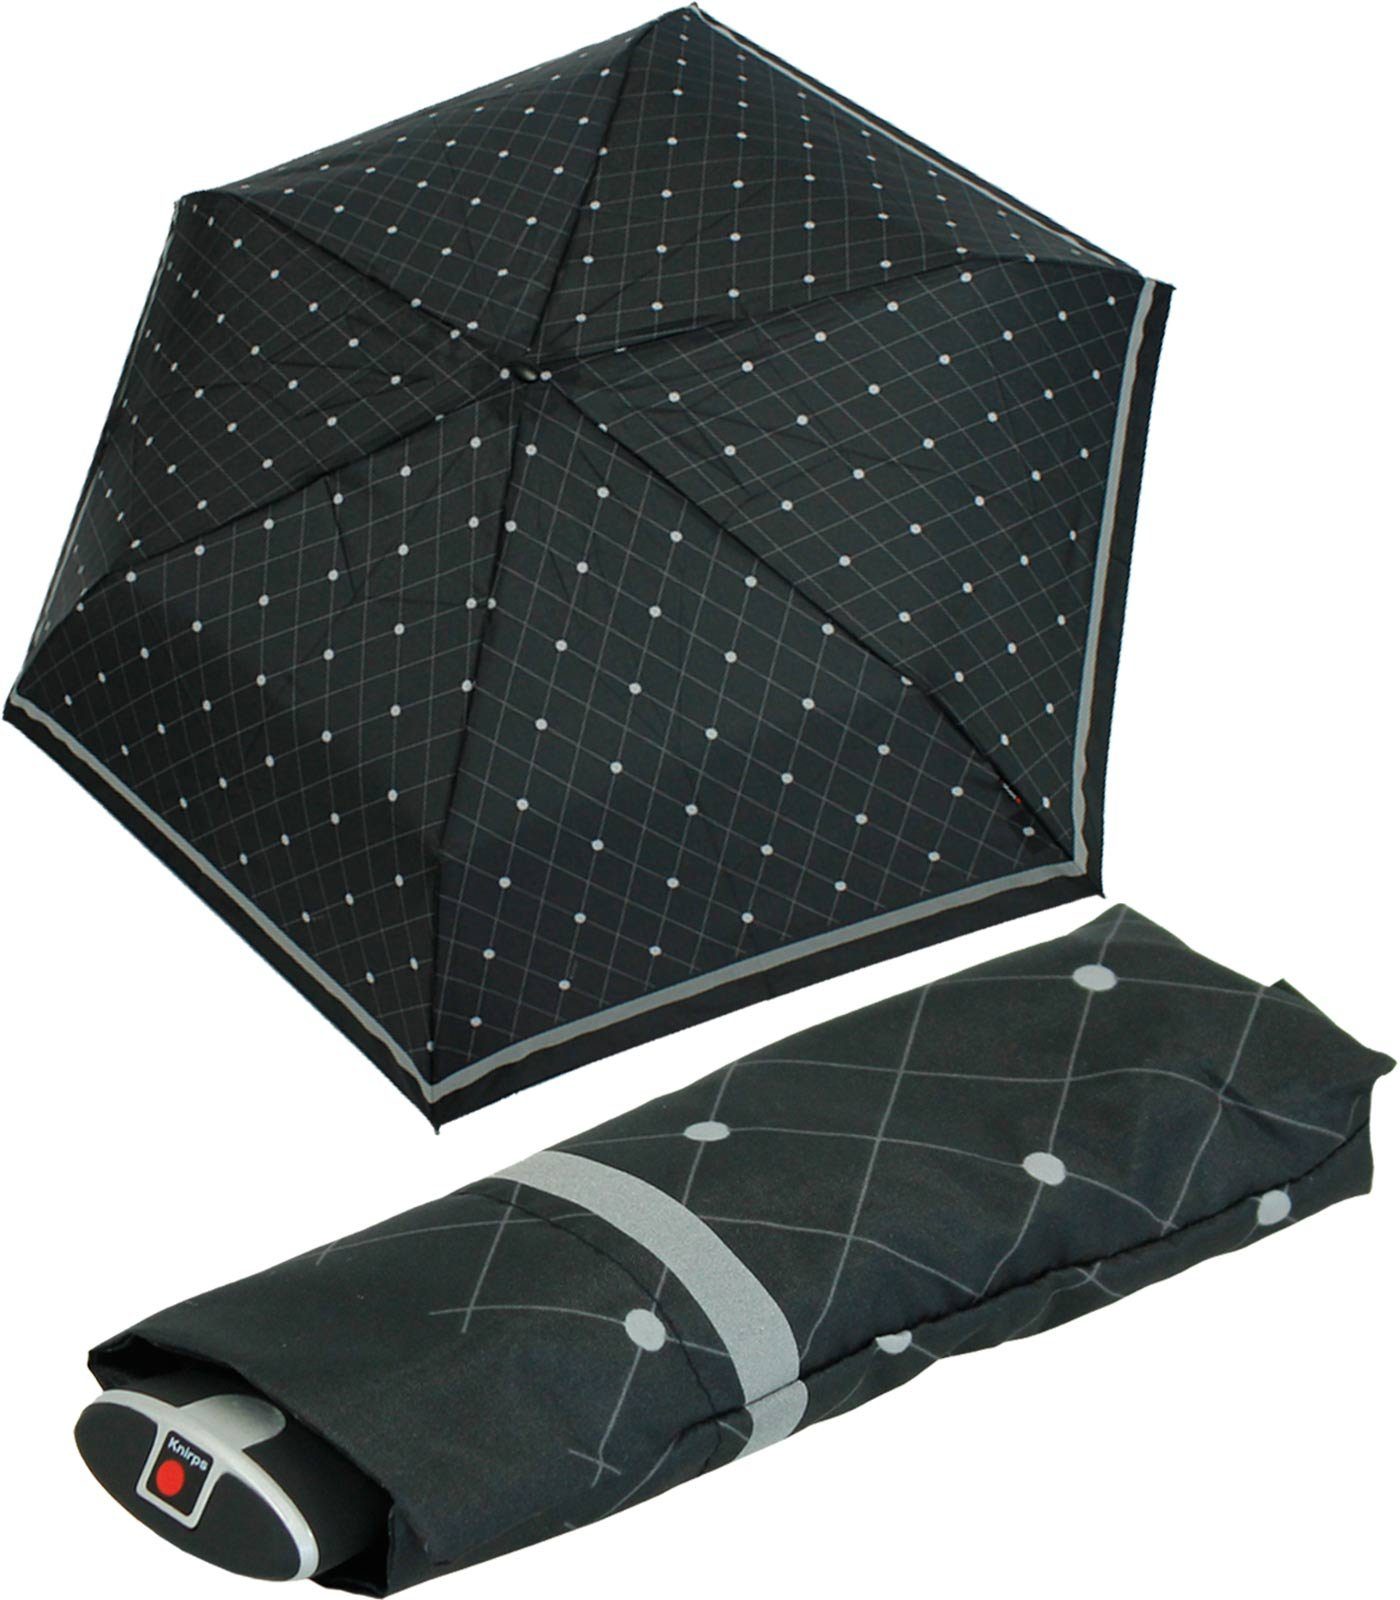 für passend ein Tasche, Begleiter, jede Knirps® Notfall für jeden flacher, Schirm, treuer Taschenregenschirm stabiler